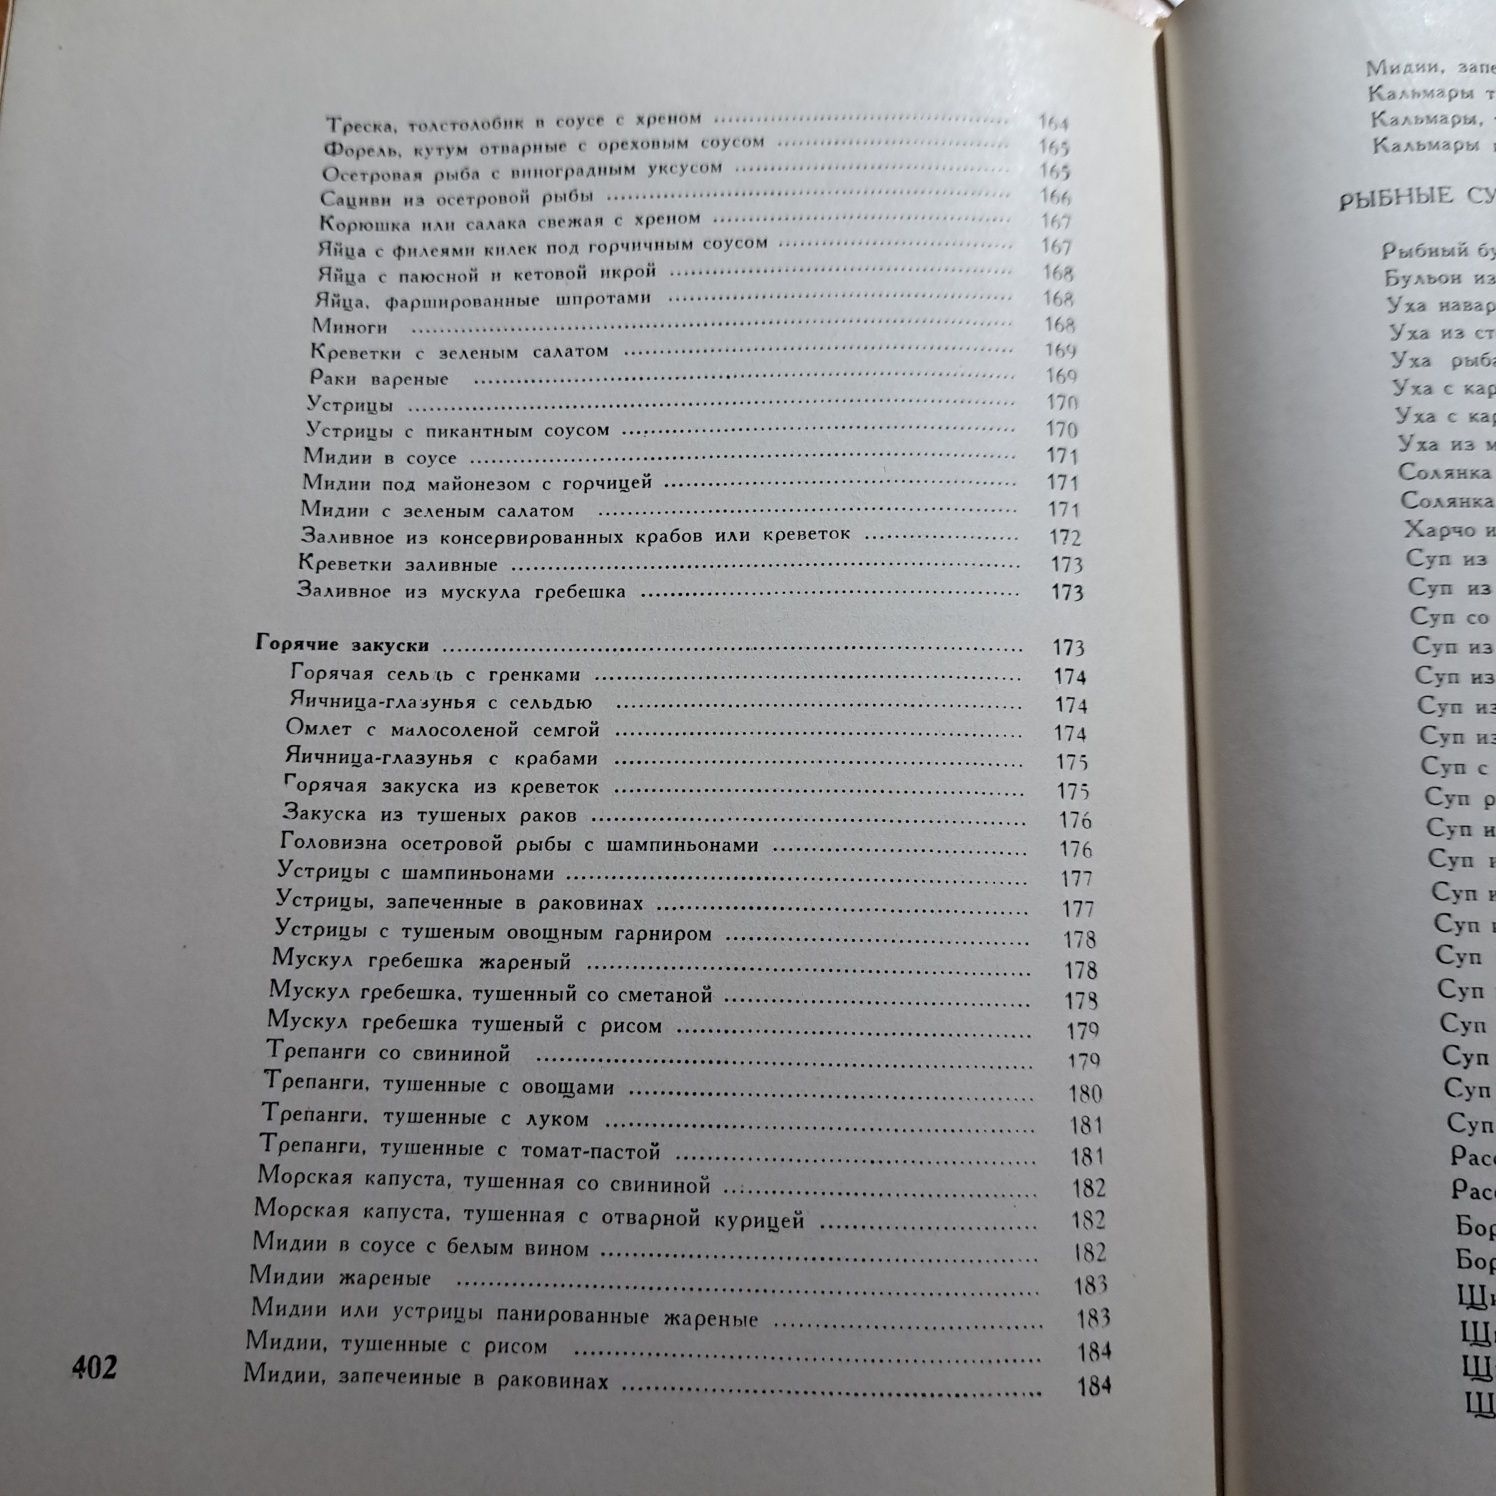 Рыбные блюда. 1966, 411 стр., 540 рецептов!!!